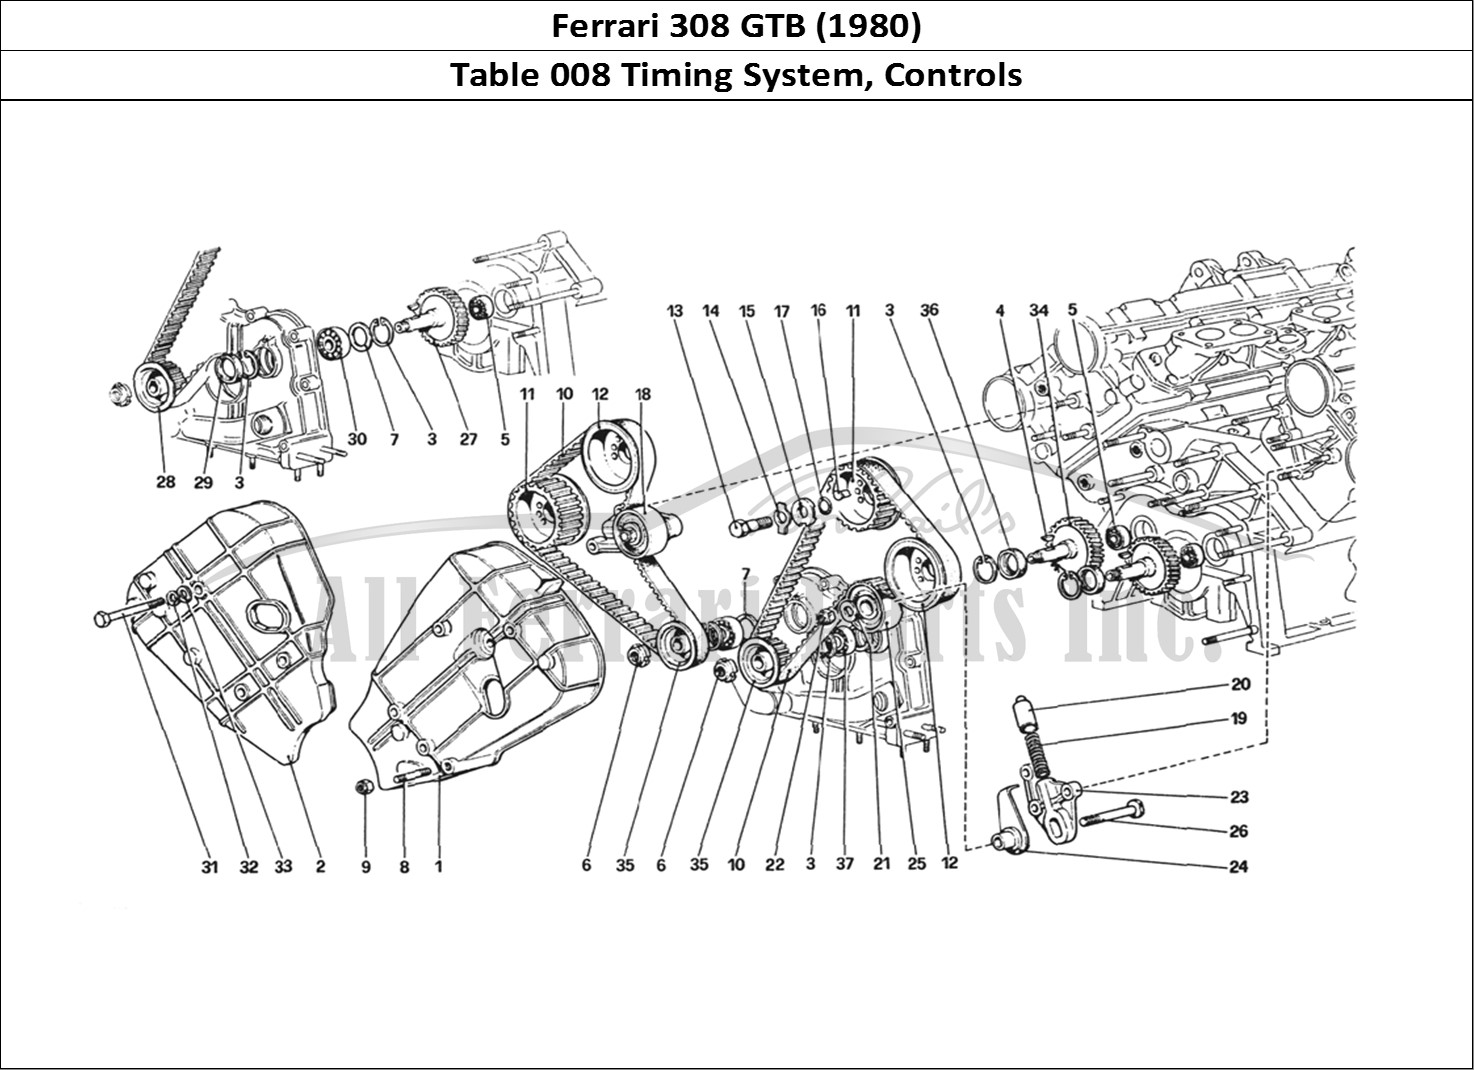 Ferrari Parts Ferrari 308 GTB (1980) Page 008 Timing System - Controls